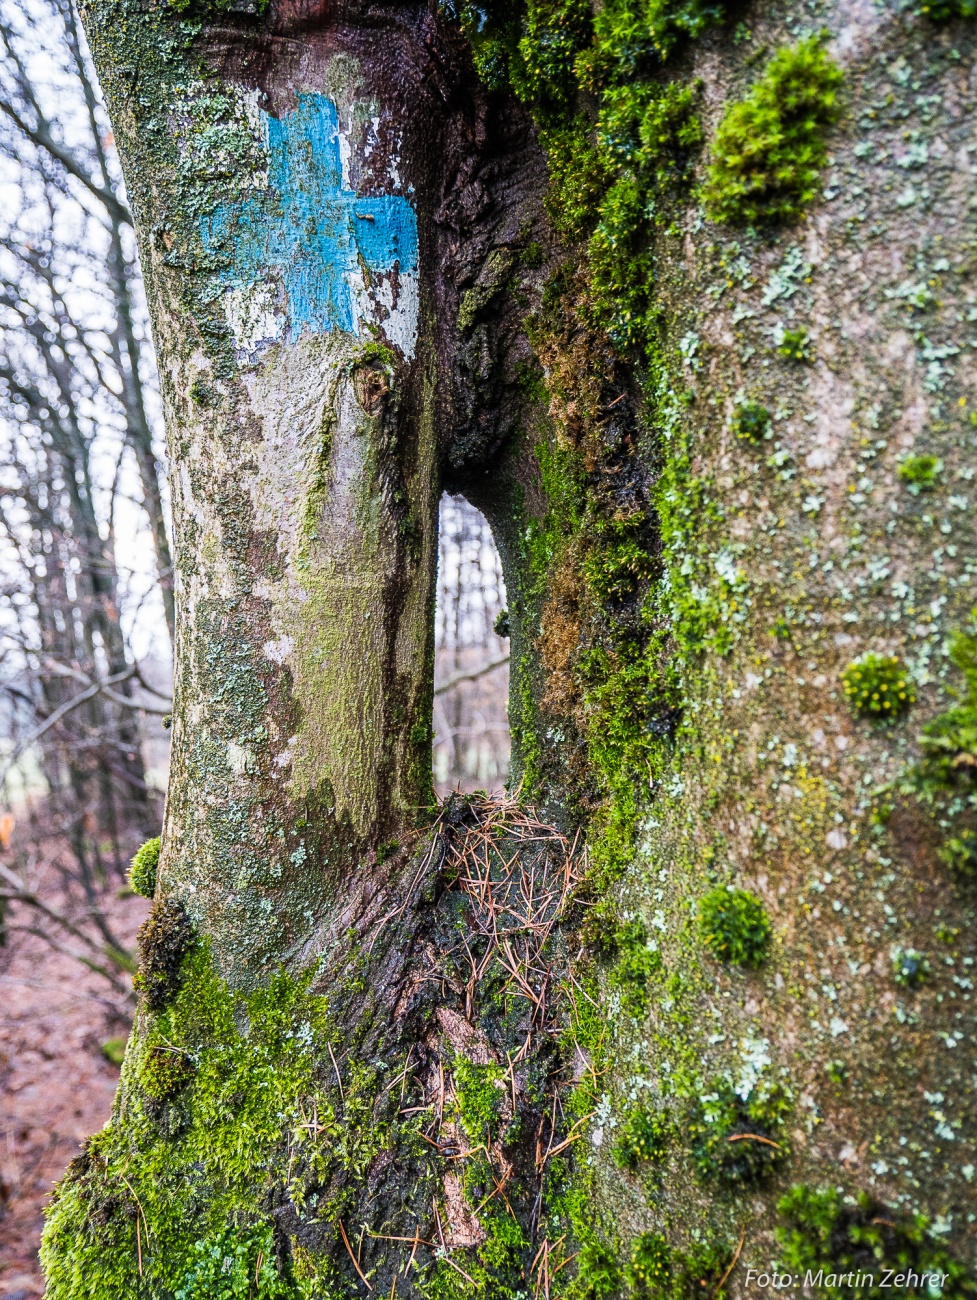 Foto: Martin Zehrer - Genauer hingeguckt - Ein interessantes Guckloch-Gebilde... Findet man auf dem Armesberg droben... ;-)<br />
<br />
Den dazugehörigen Baum findest Du ein Bild weiter zurück! 